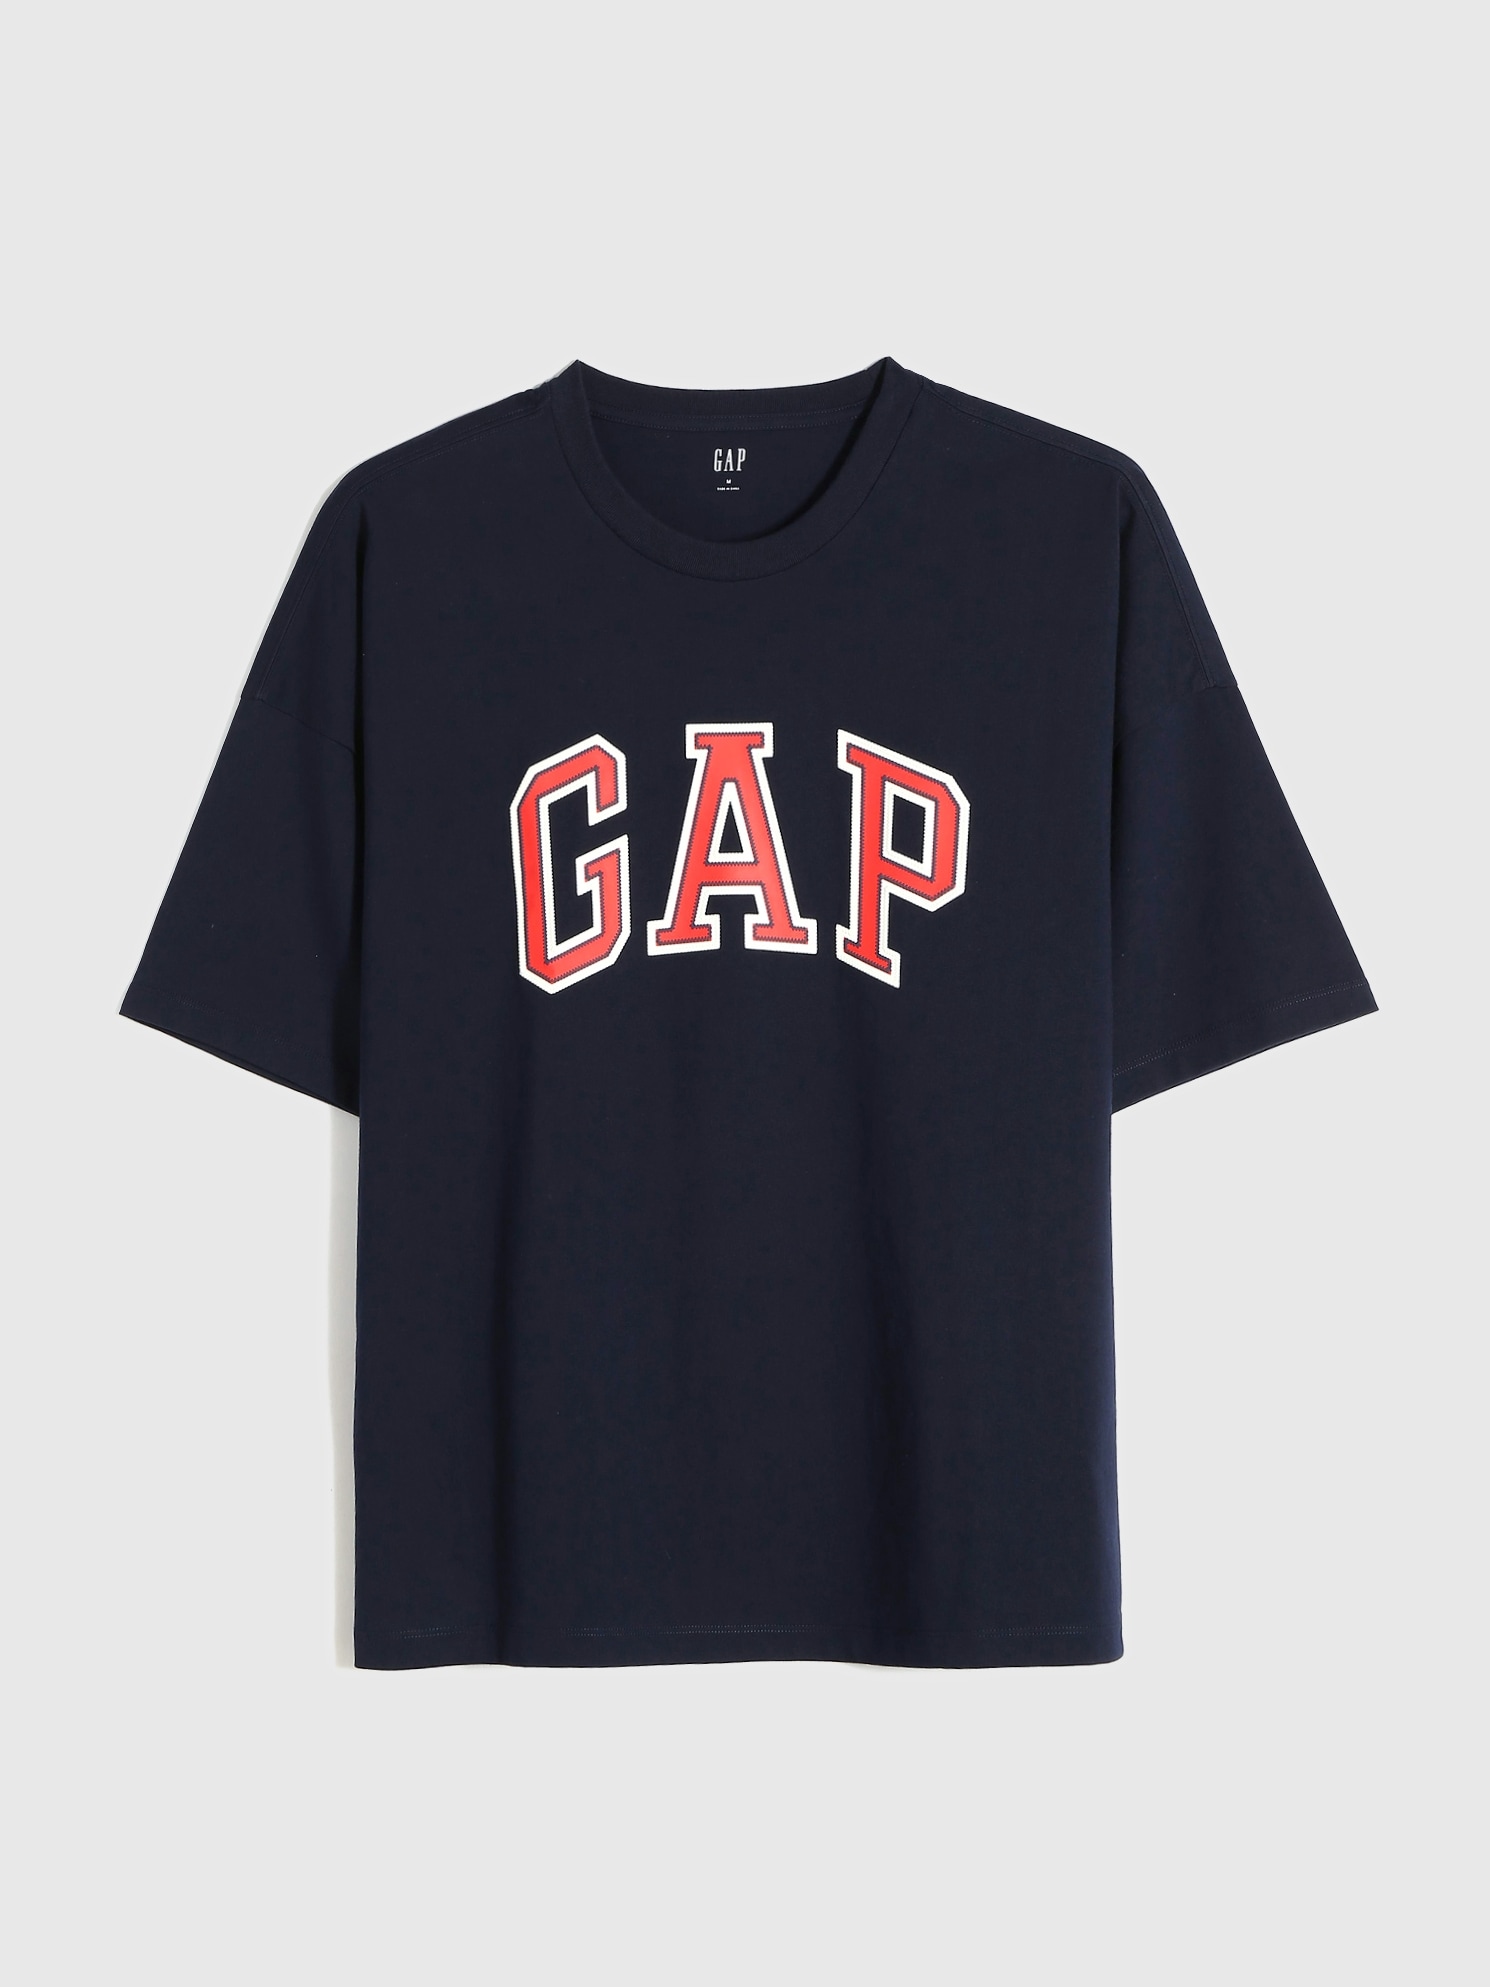 売上実績NO.1 GAP Tシャツ ecousarecycling.com